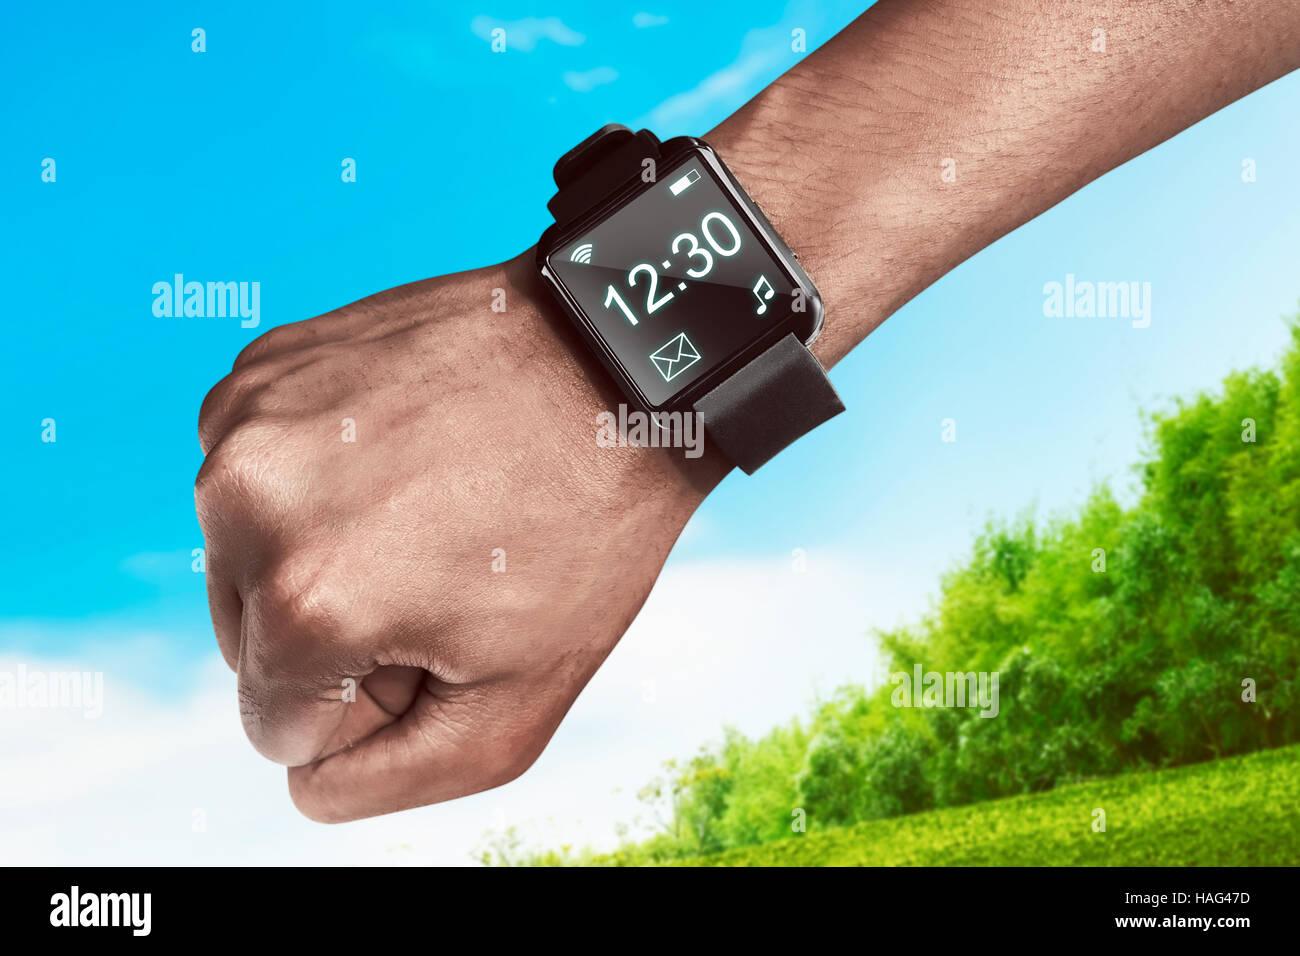 Mano humana usando Smart Watch. Concepto de gadget portátil Foto de stock